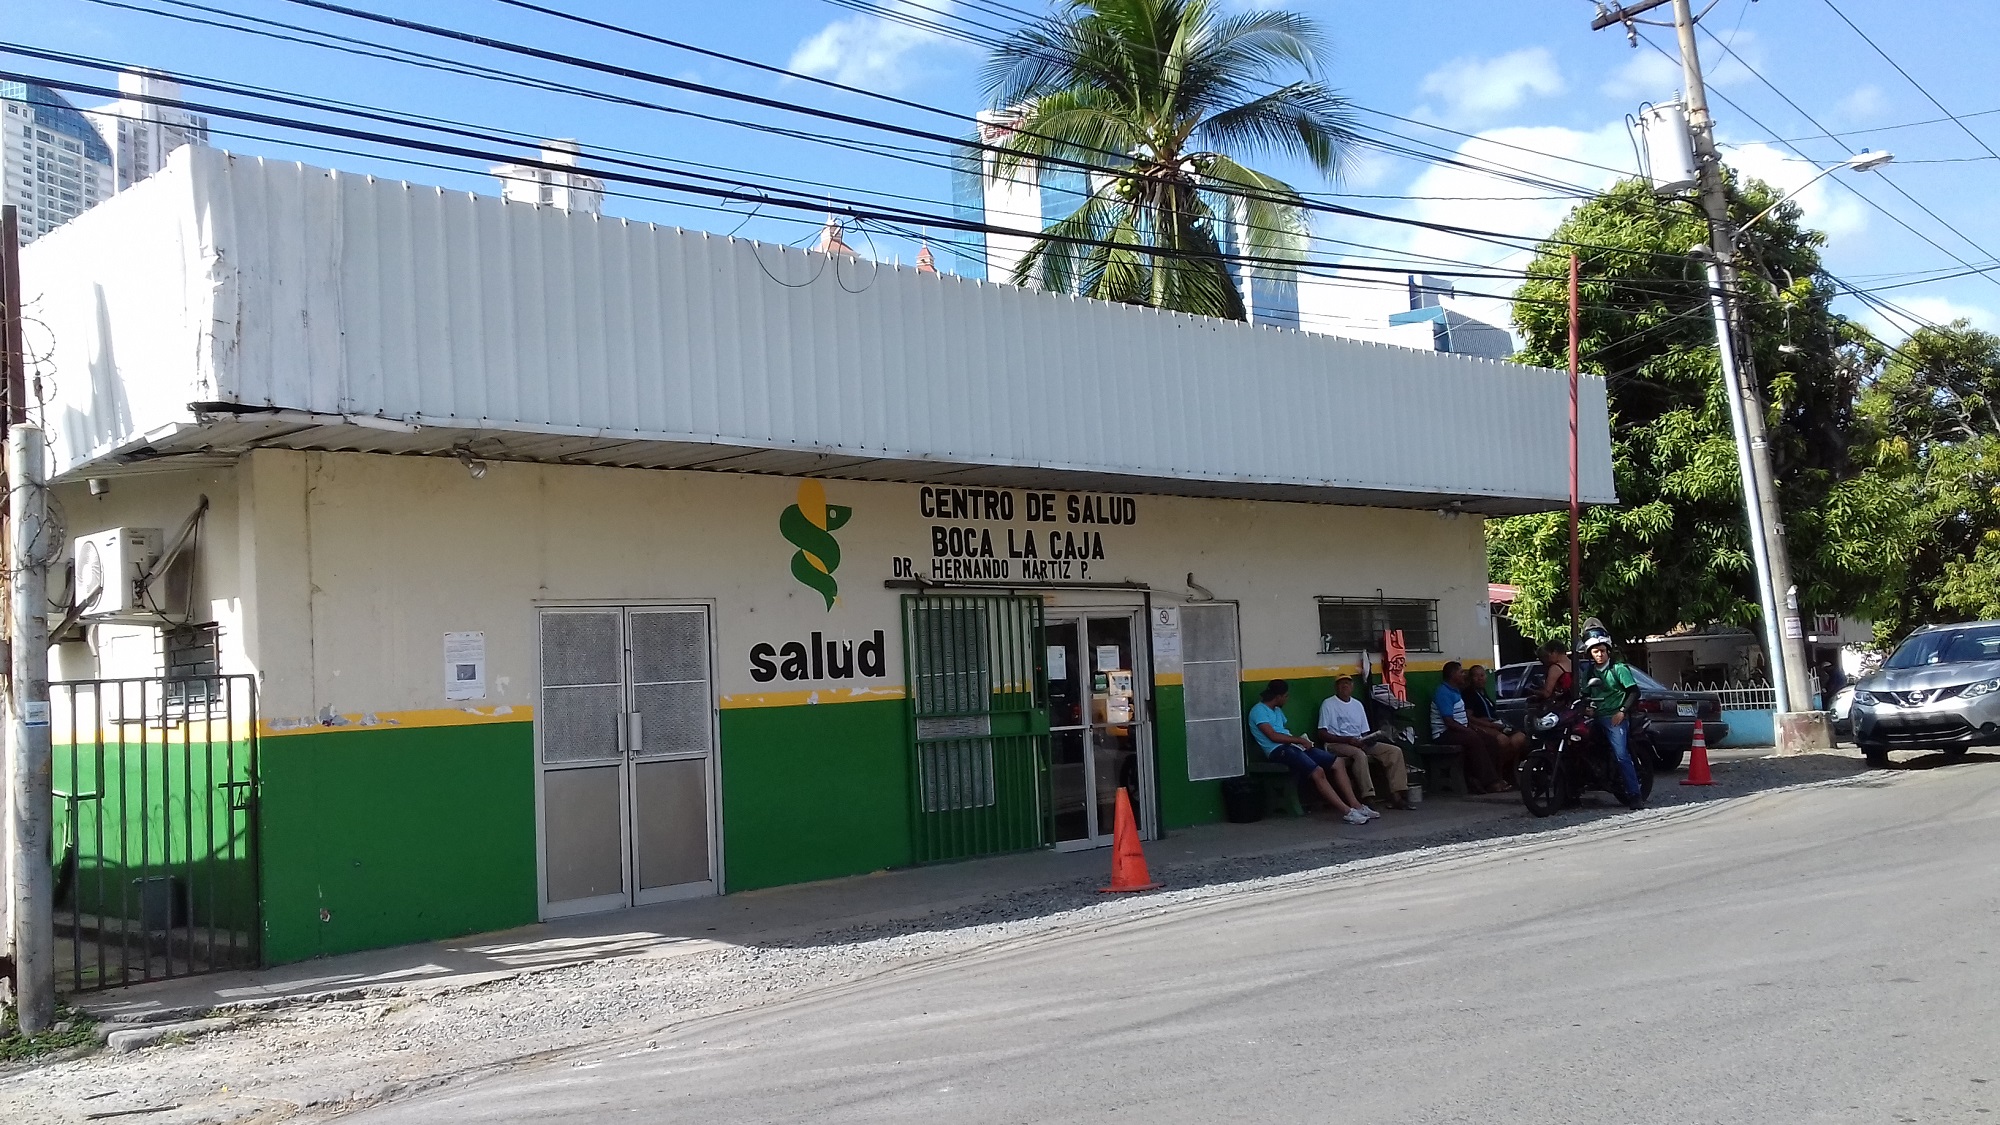 El Centro de Salud Dr. Hernando Martiz Pujol en Boca La Caja